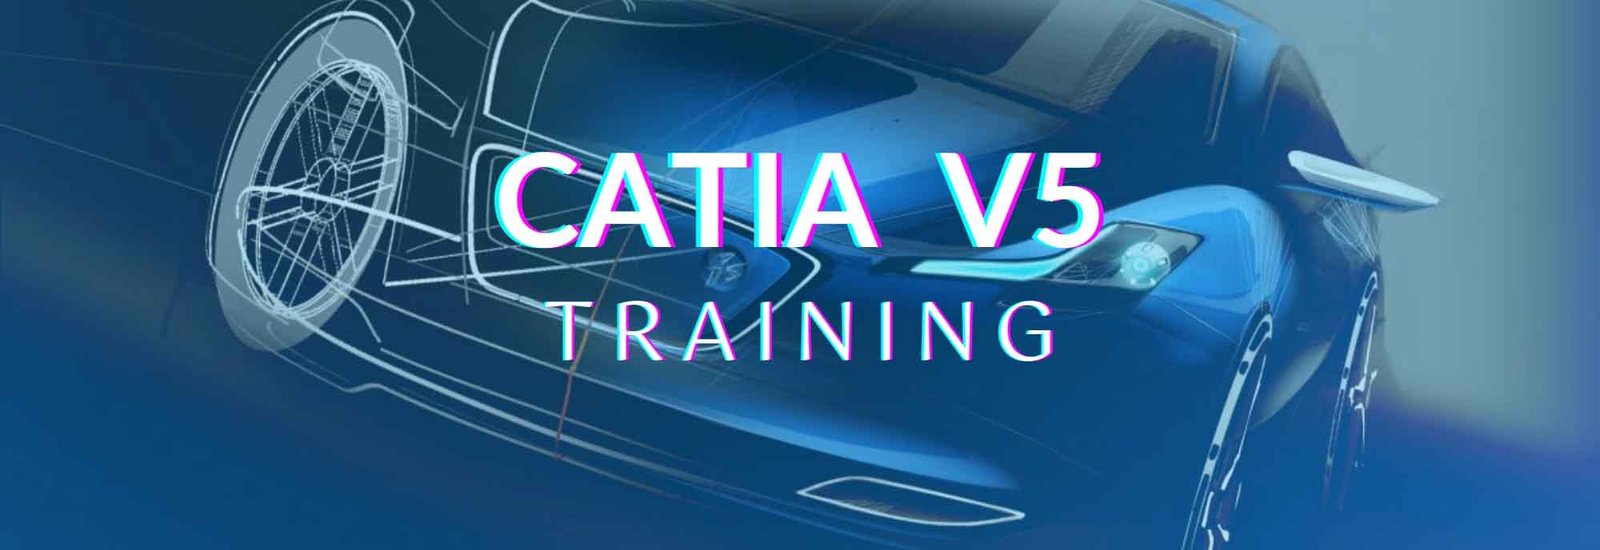 CATIA V5 Training​